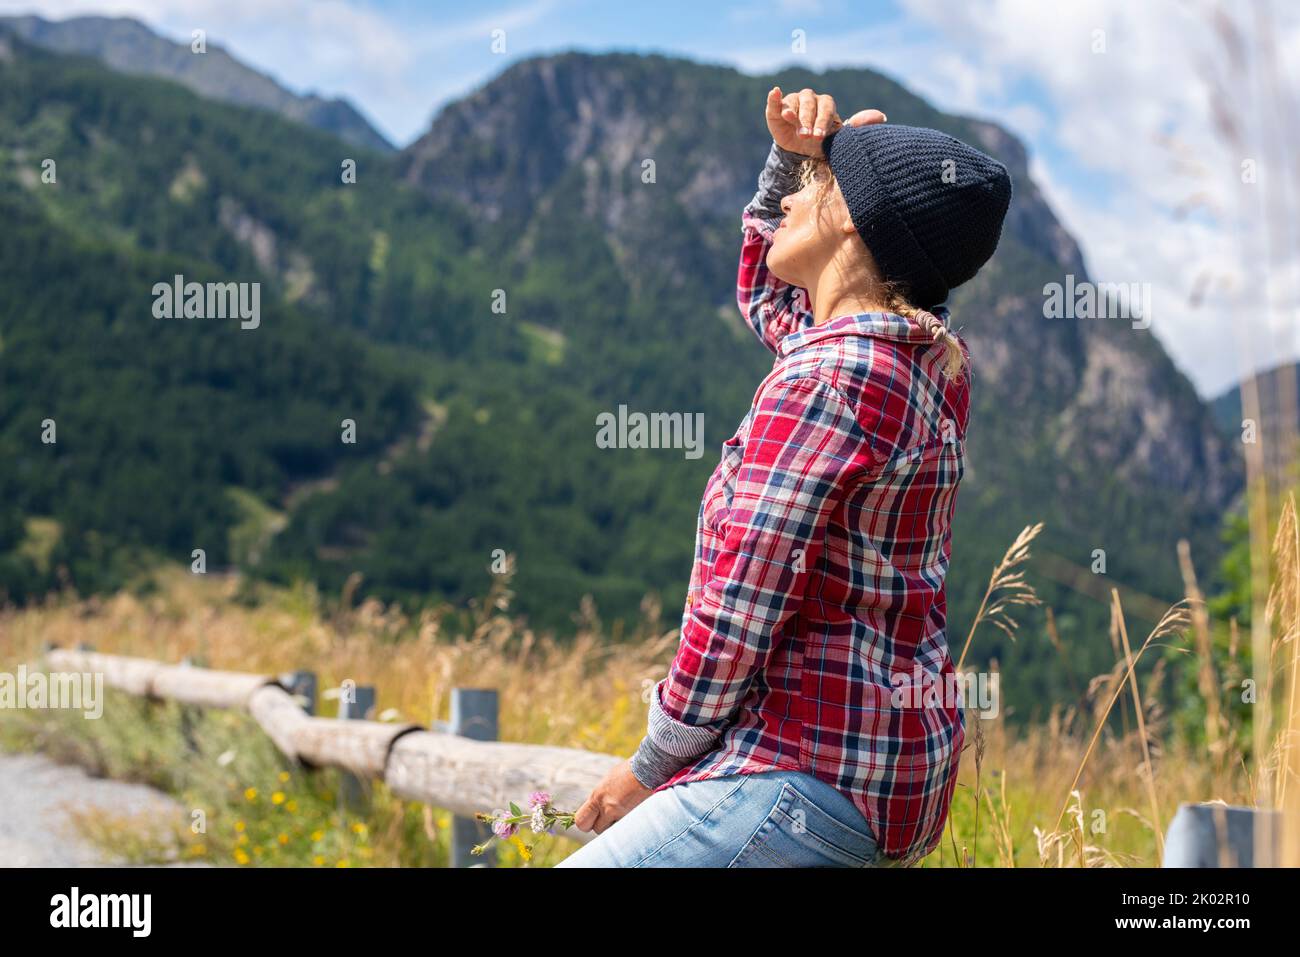 Outdoor-Freizeitangebot für Bergtouristen. Frau, die in den Himmel schaut. Tourismus und touristische Sommerferien. Freiheit und Aktivität auf der Landseite Stockfoto